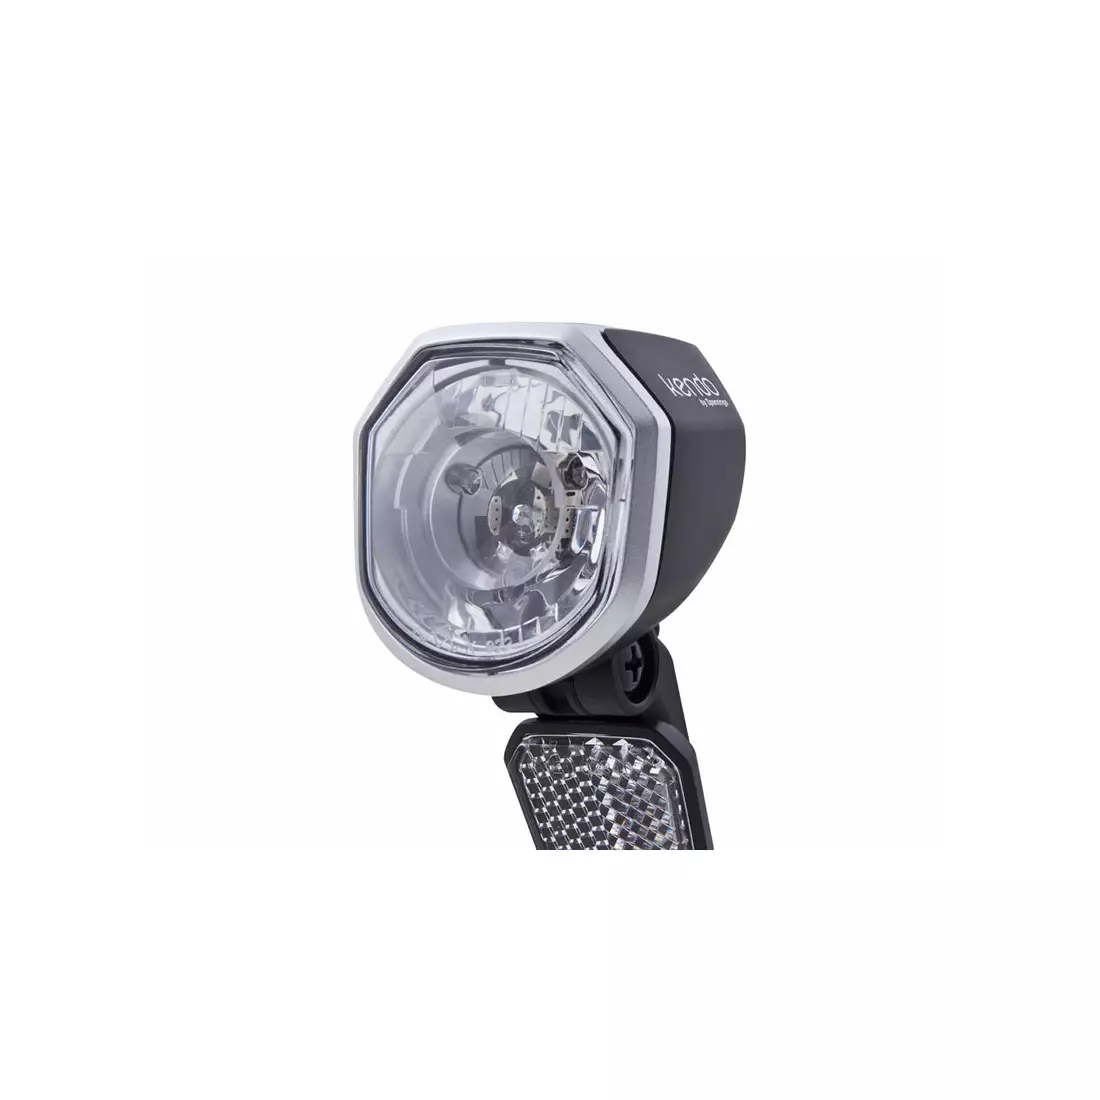 Přední světlo SPANNINGA KENDO+ XE 30 luxů / 120 lumenů pro jízdní kola e-bike 6-36VDC (NEW) SNG-H057088